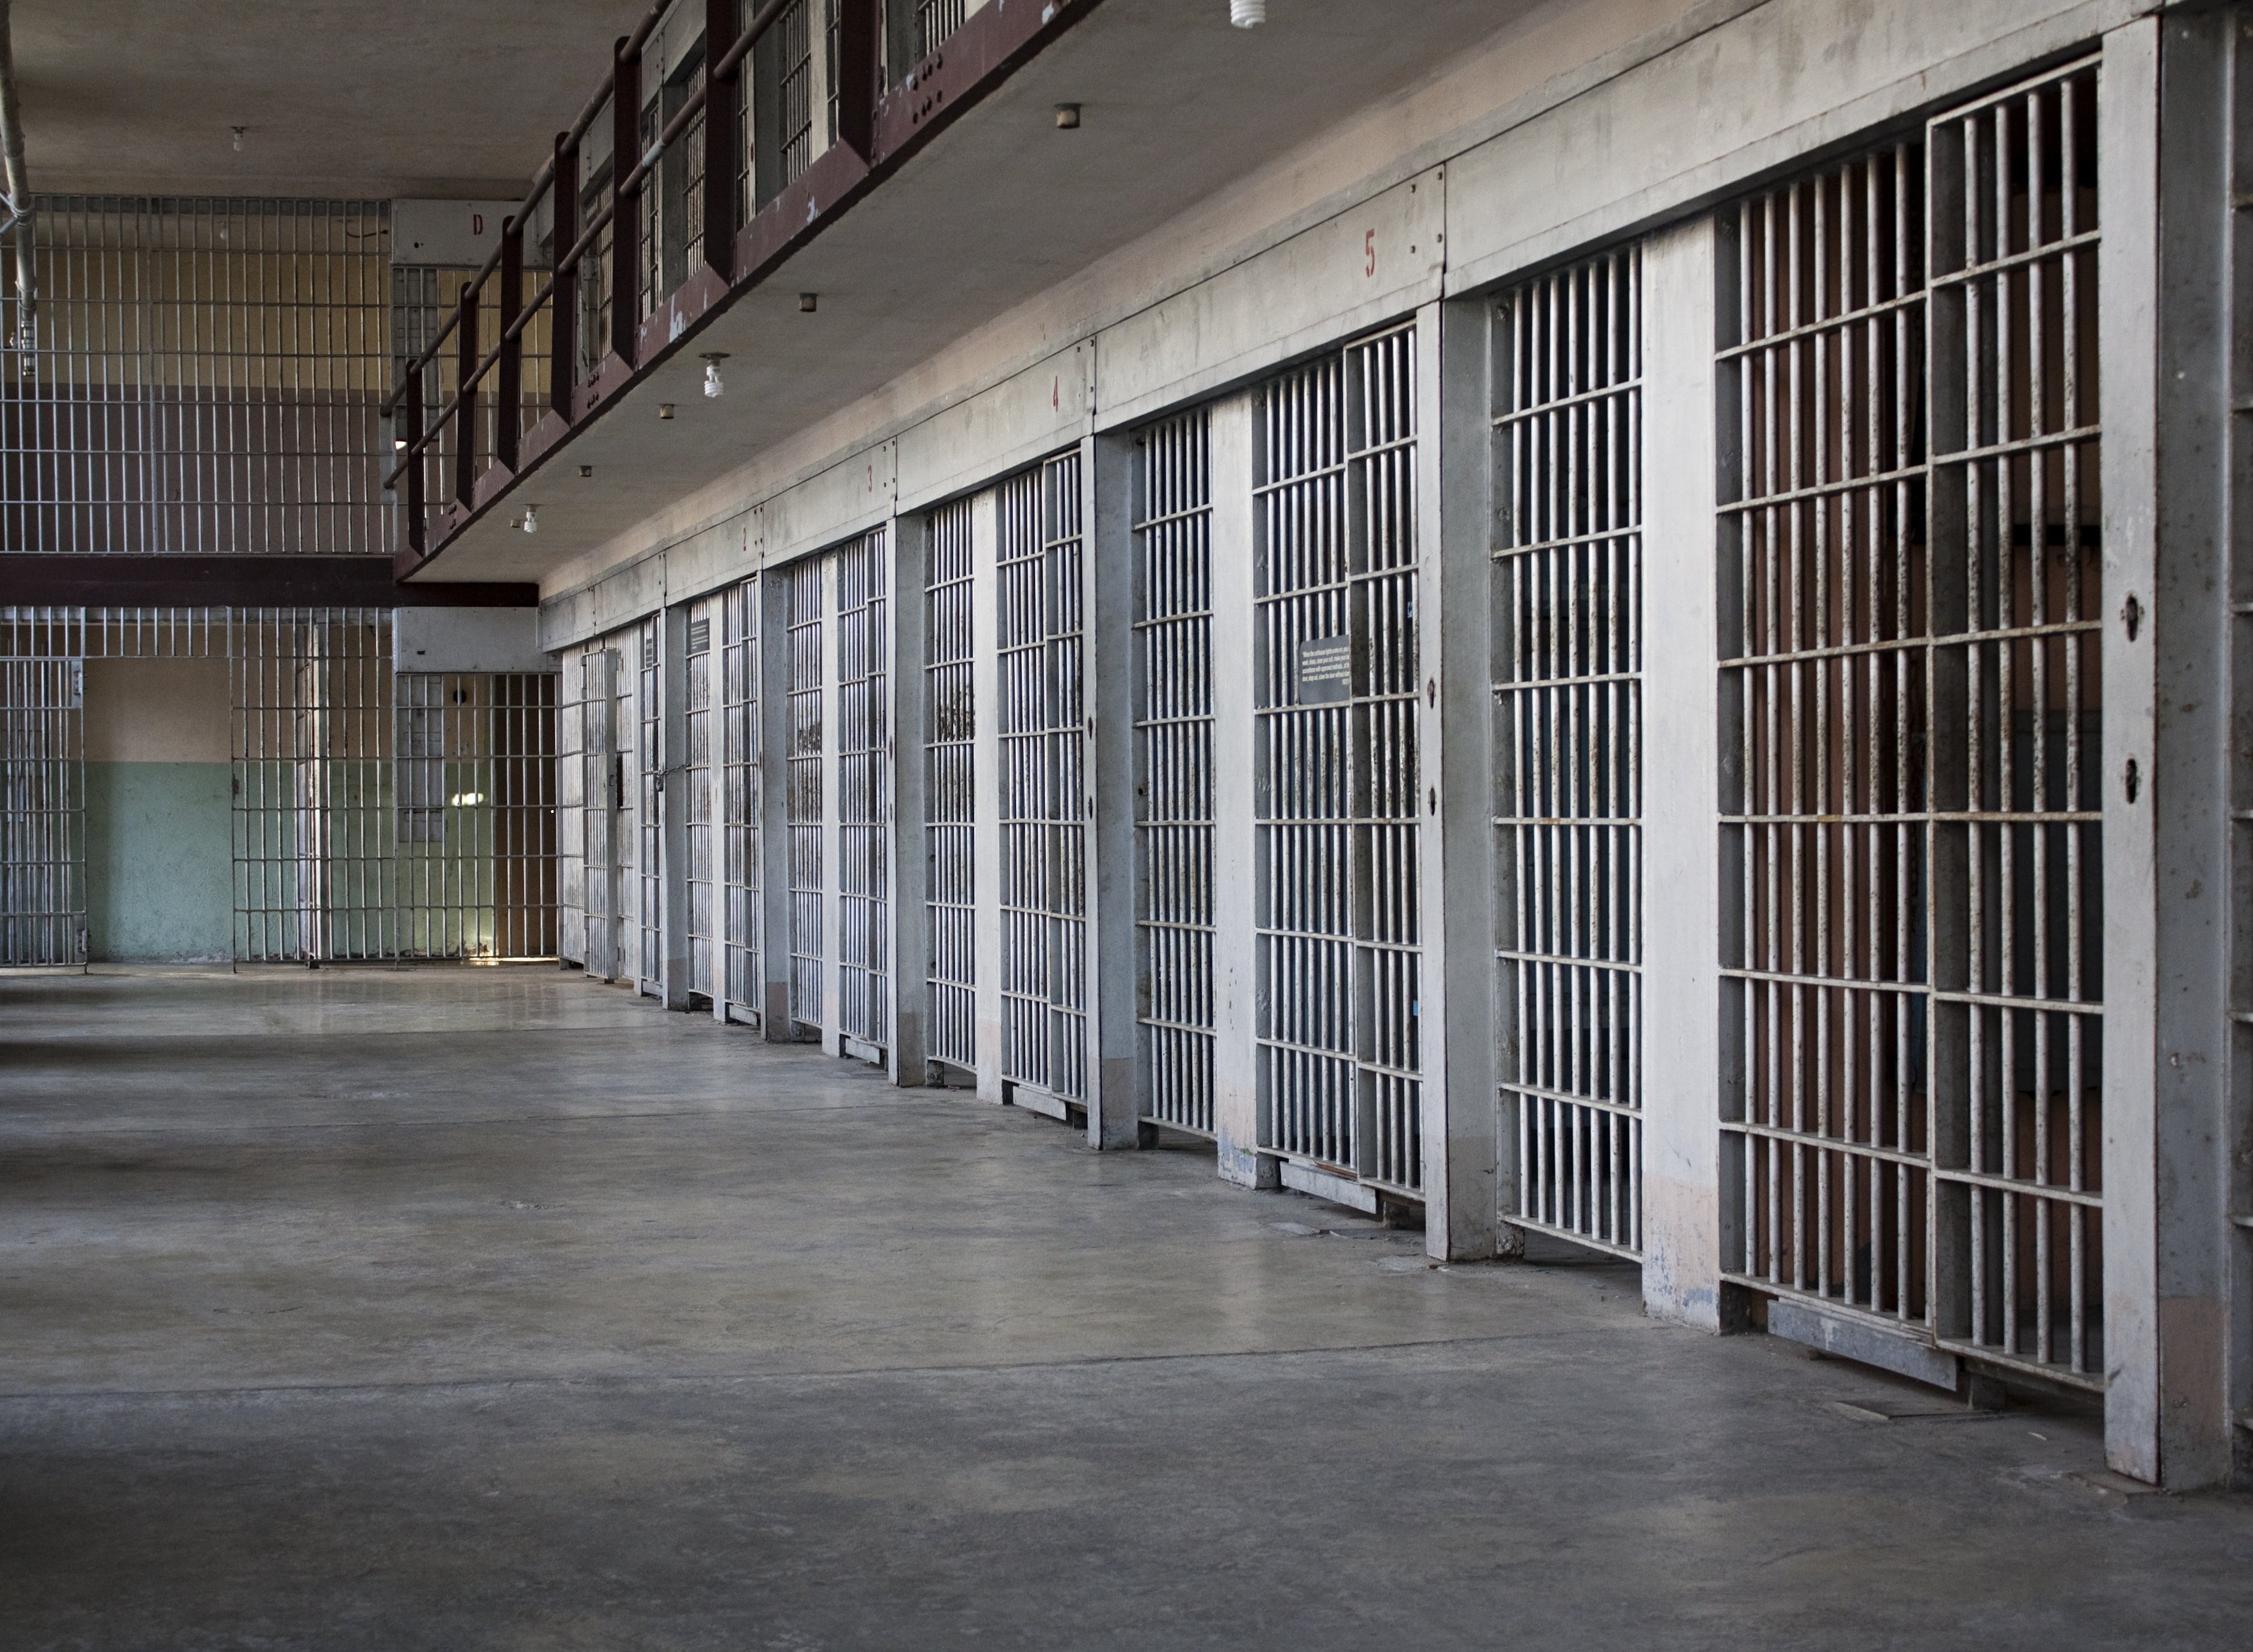 Carceri e coronavirus: "Le prigioni possono essere delle polveriere"